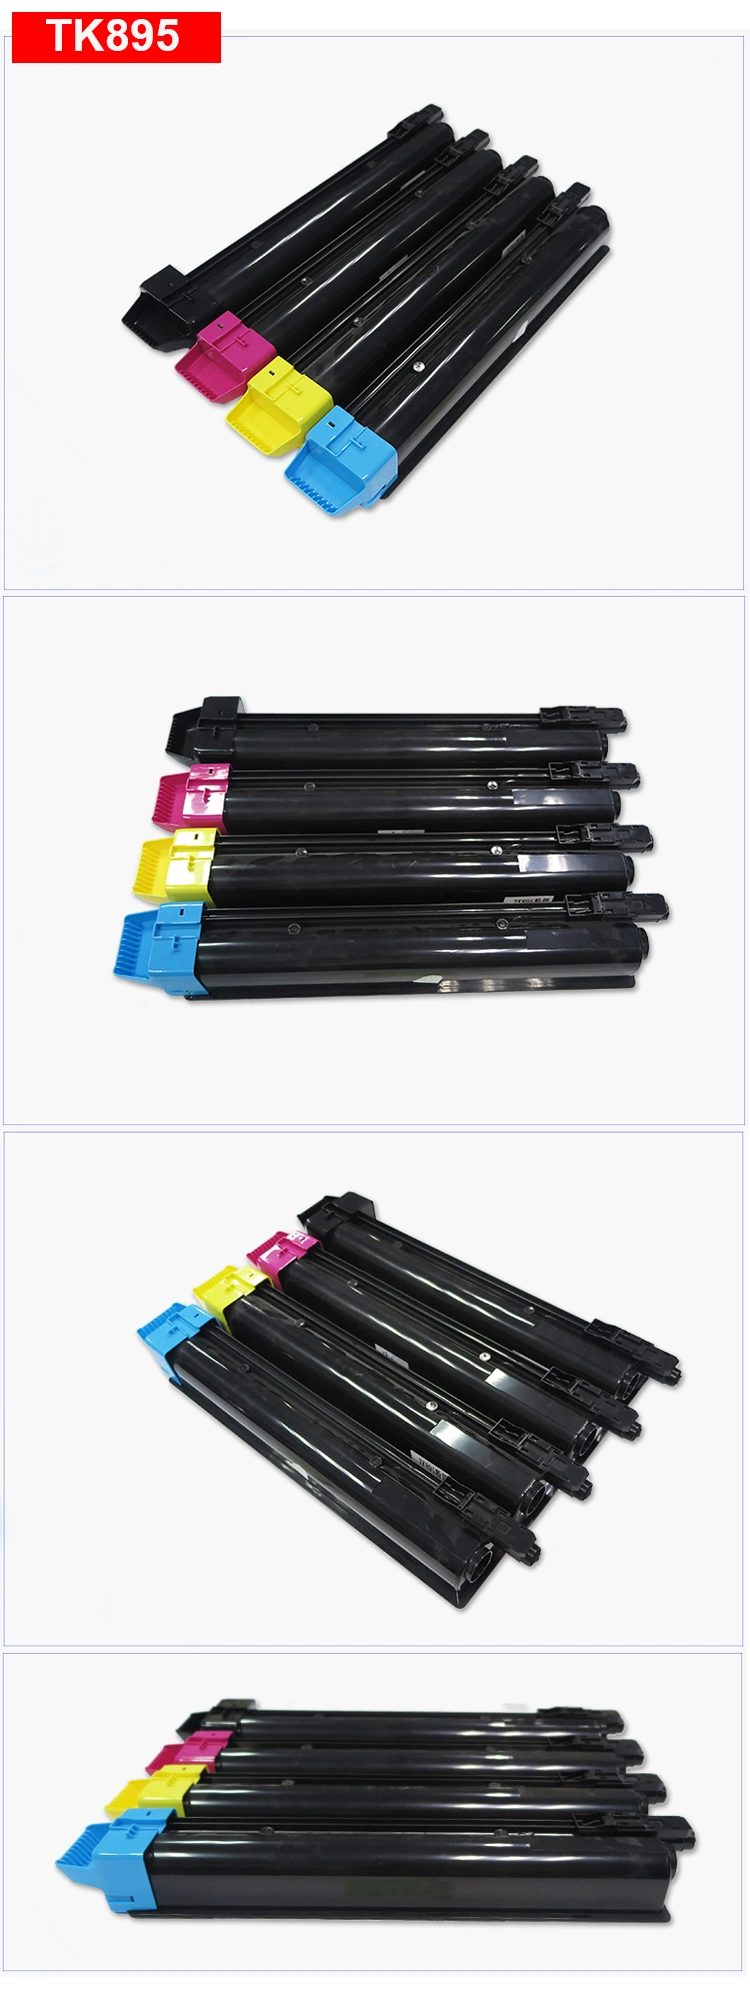 Tk895 Kyocera Toner Cartridges for Kyocera Fs - C 8520mfp, 6000 Pages